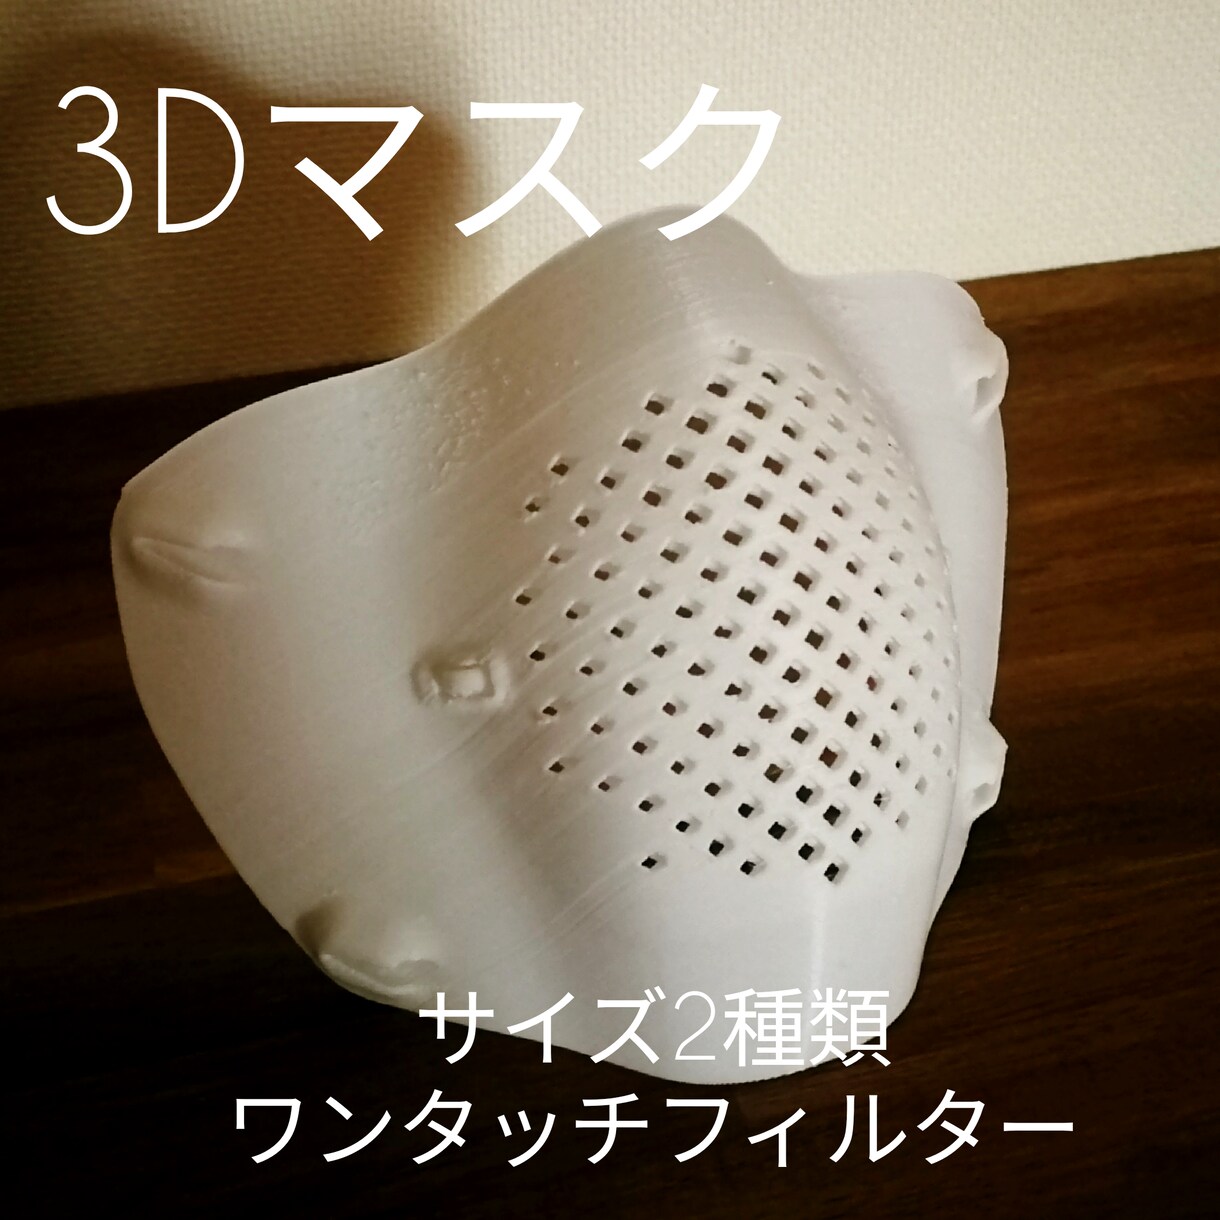 PITATT 3D print maskます フィルタ付き3Dマスクを代行作成します イメージ1